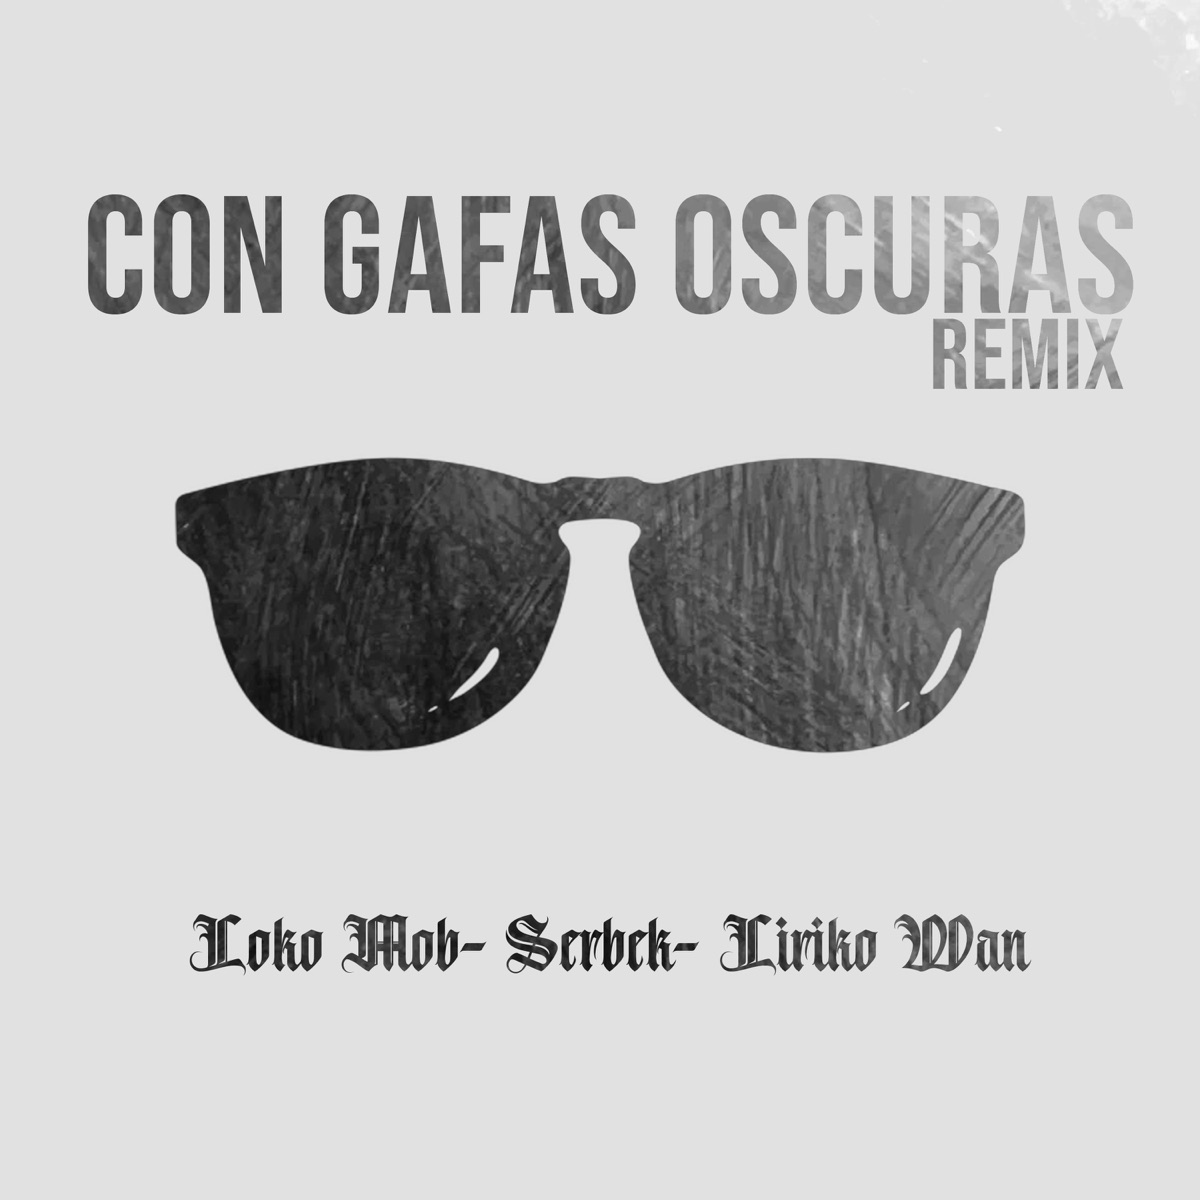 Con Gafas Oscuras (Remix) - Single - Album by Loko Mob, Liriko Wan & Serbek  - Apple Music